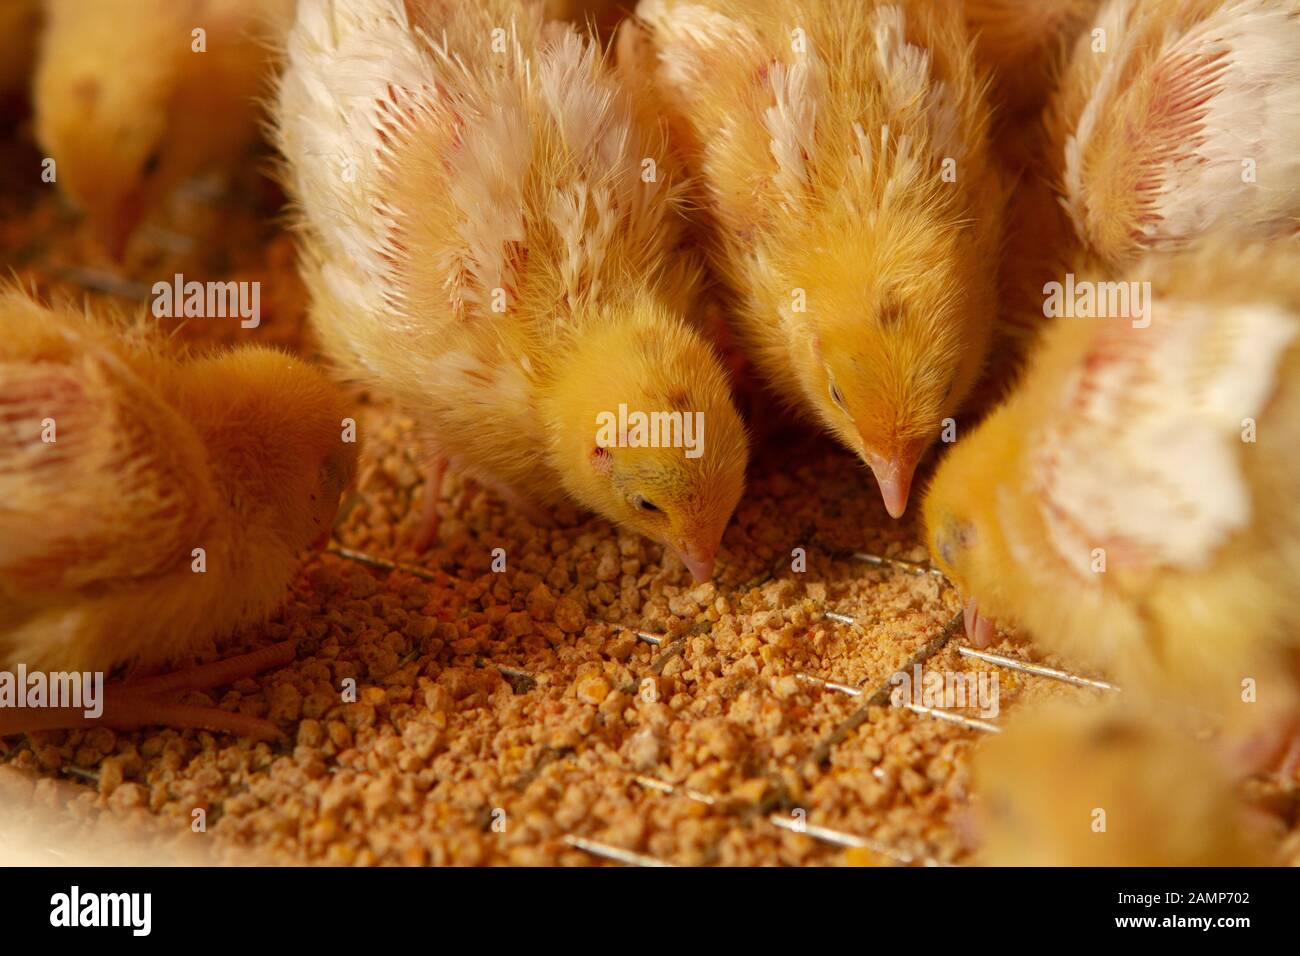 Fattoria di pollo al coperto, alimentazione di pollo, alimentazione di pollo alla graticola, alimentazione e mantenimento di polli alla quaglia Foto Stock